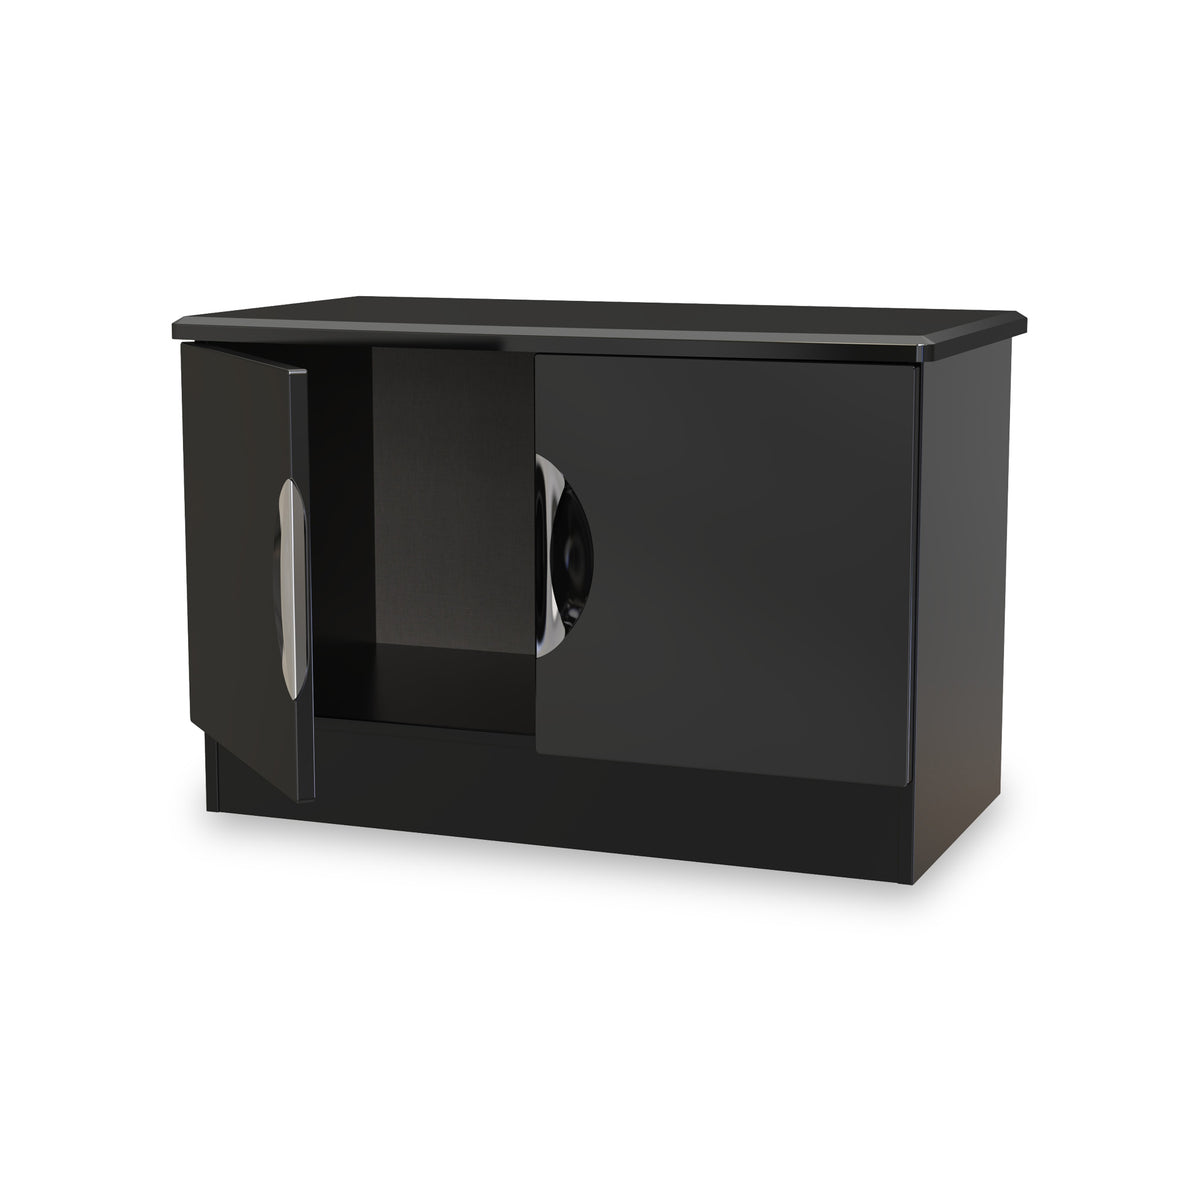 Beckett Black Gloss 2 Door Compact TV Cabinet from Roseland